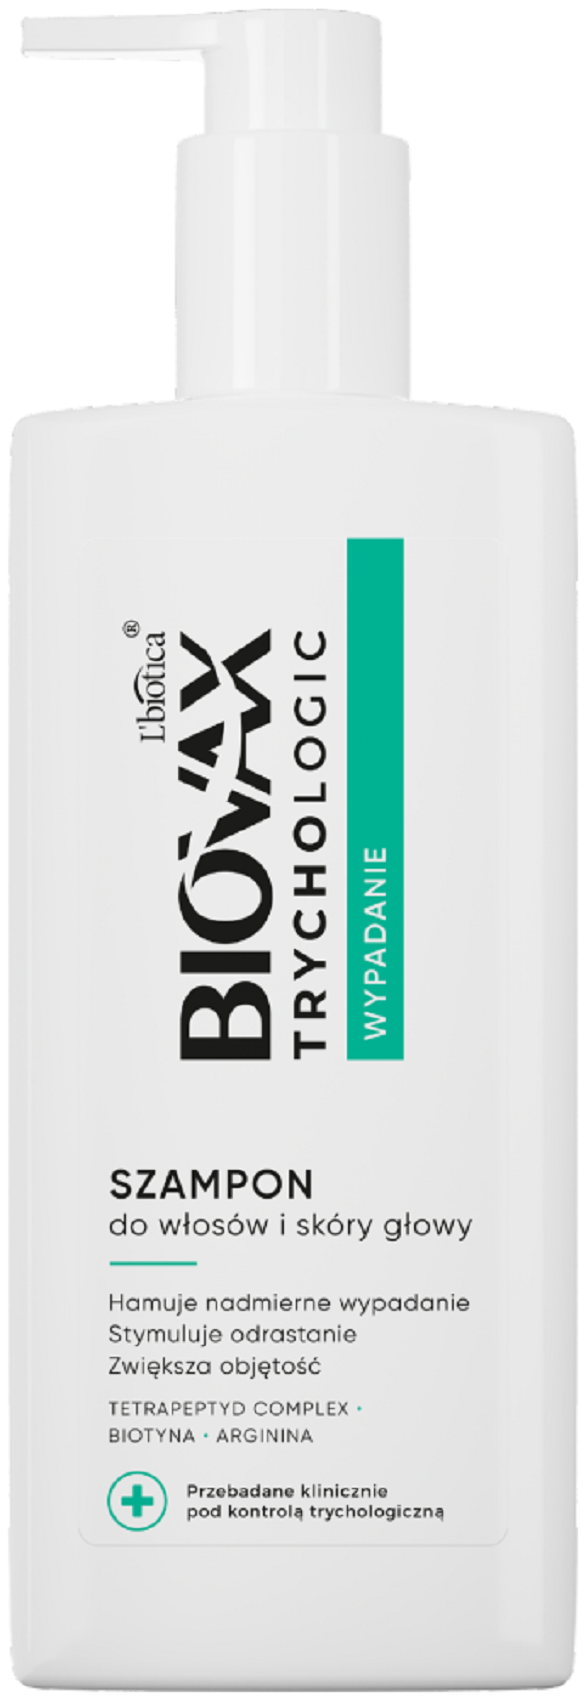 biovax opinie szampon